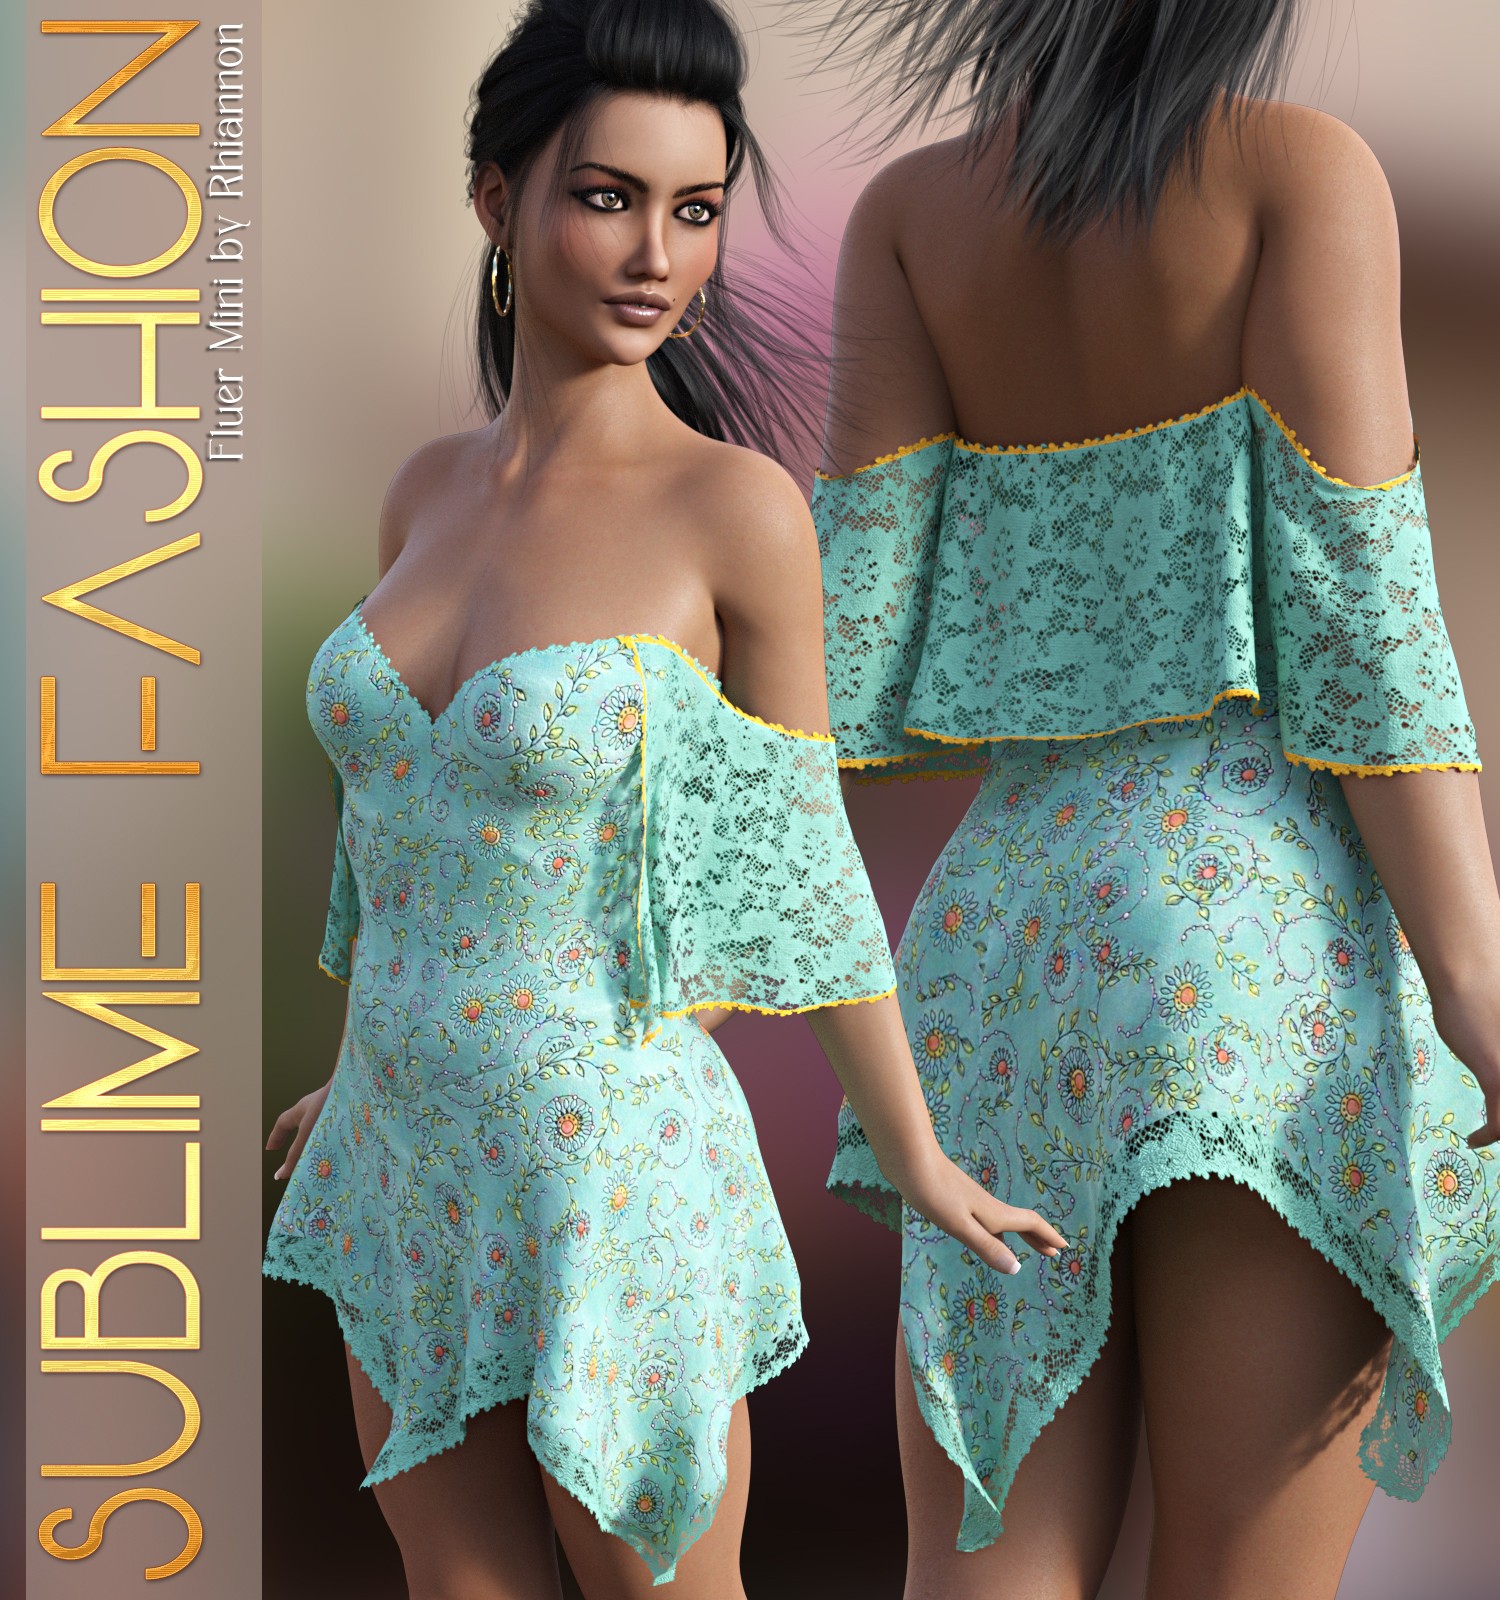 Sublime Fashion for Fleur Mini_DAZ3D下载站